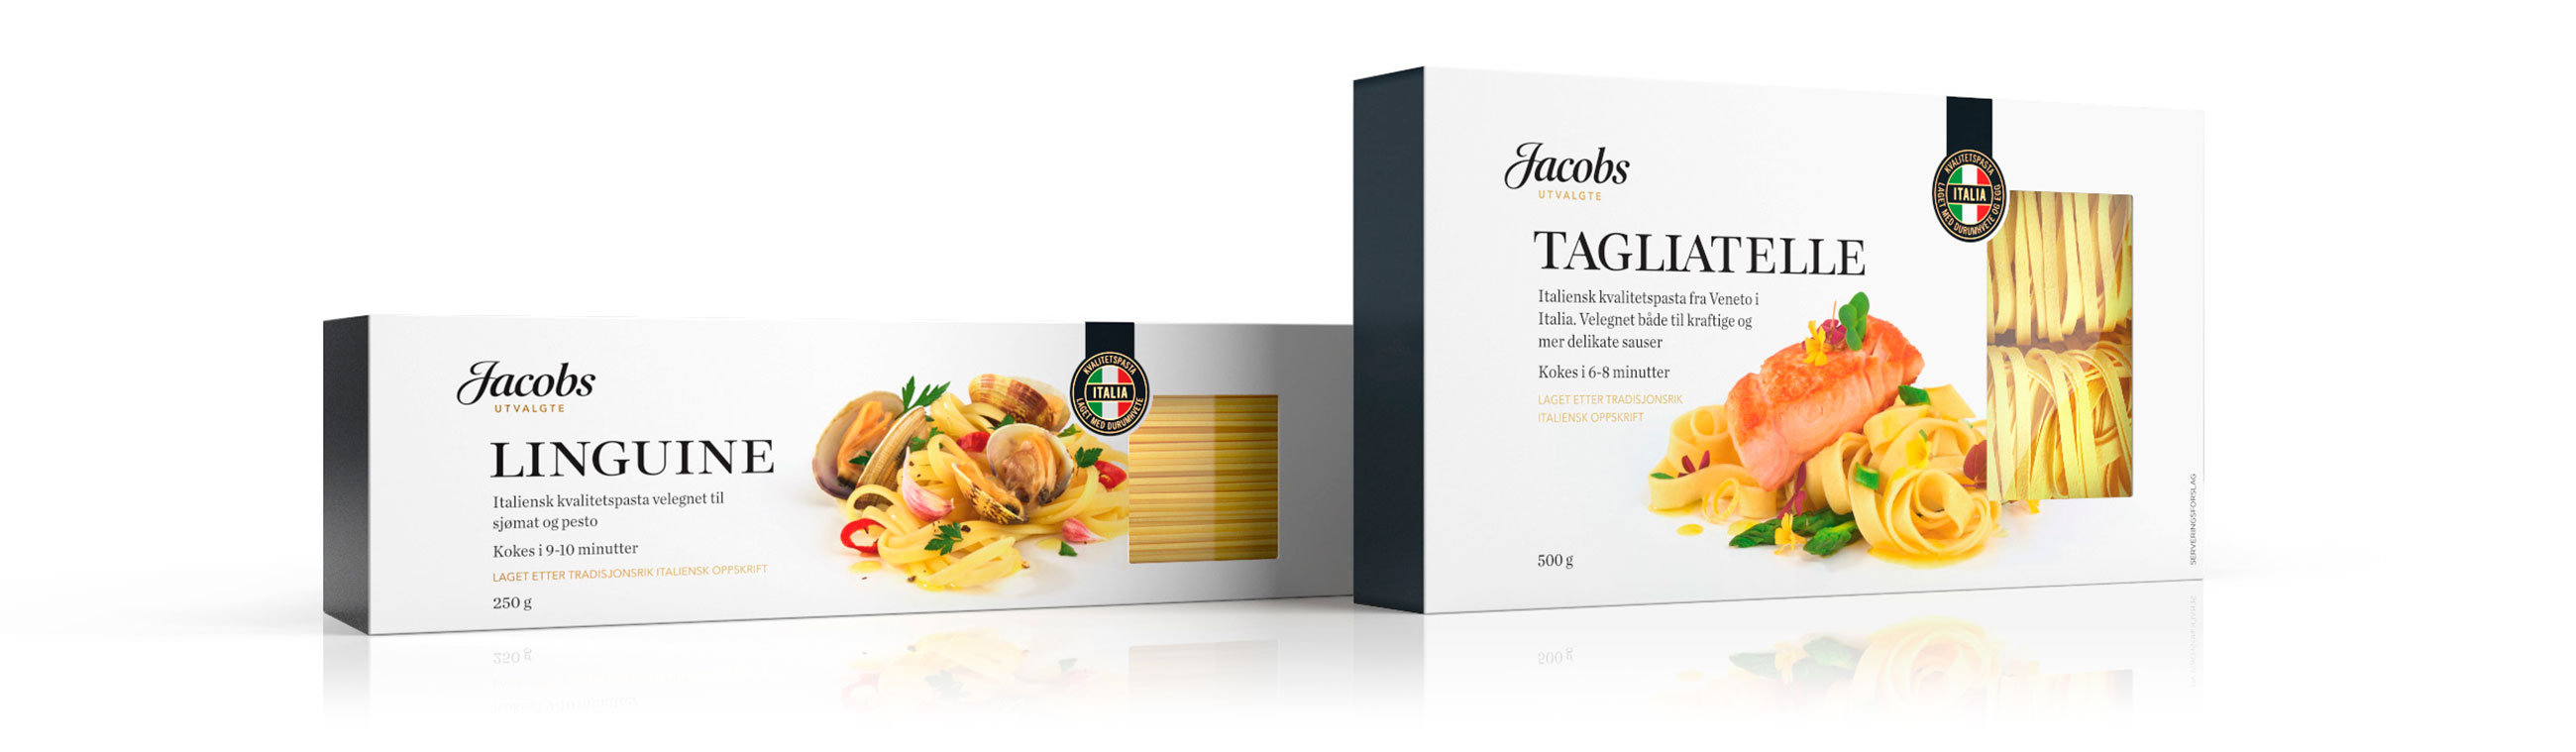 Jacobs Utvalgte Linguine og Tagliatelle. Emballasje packaging design.